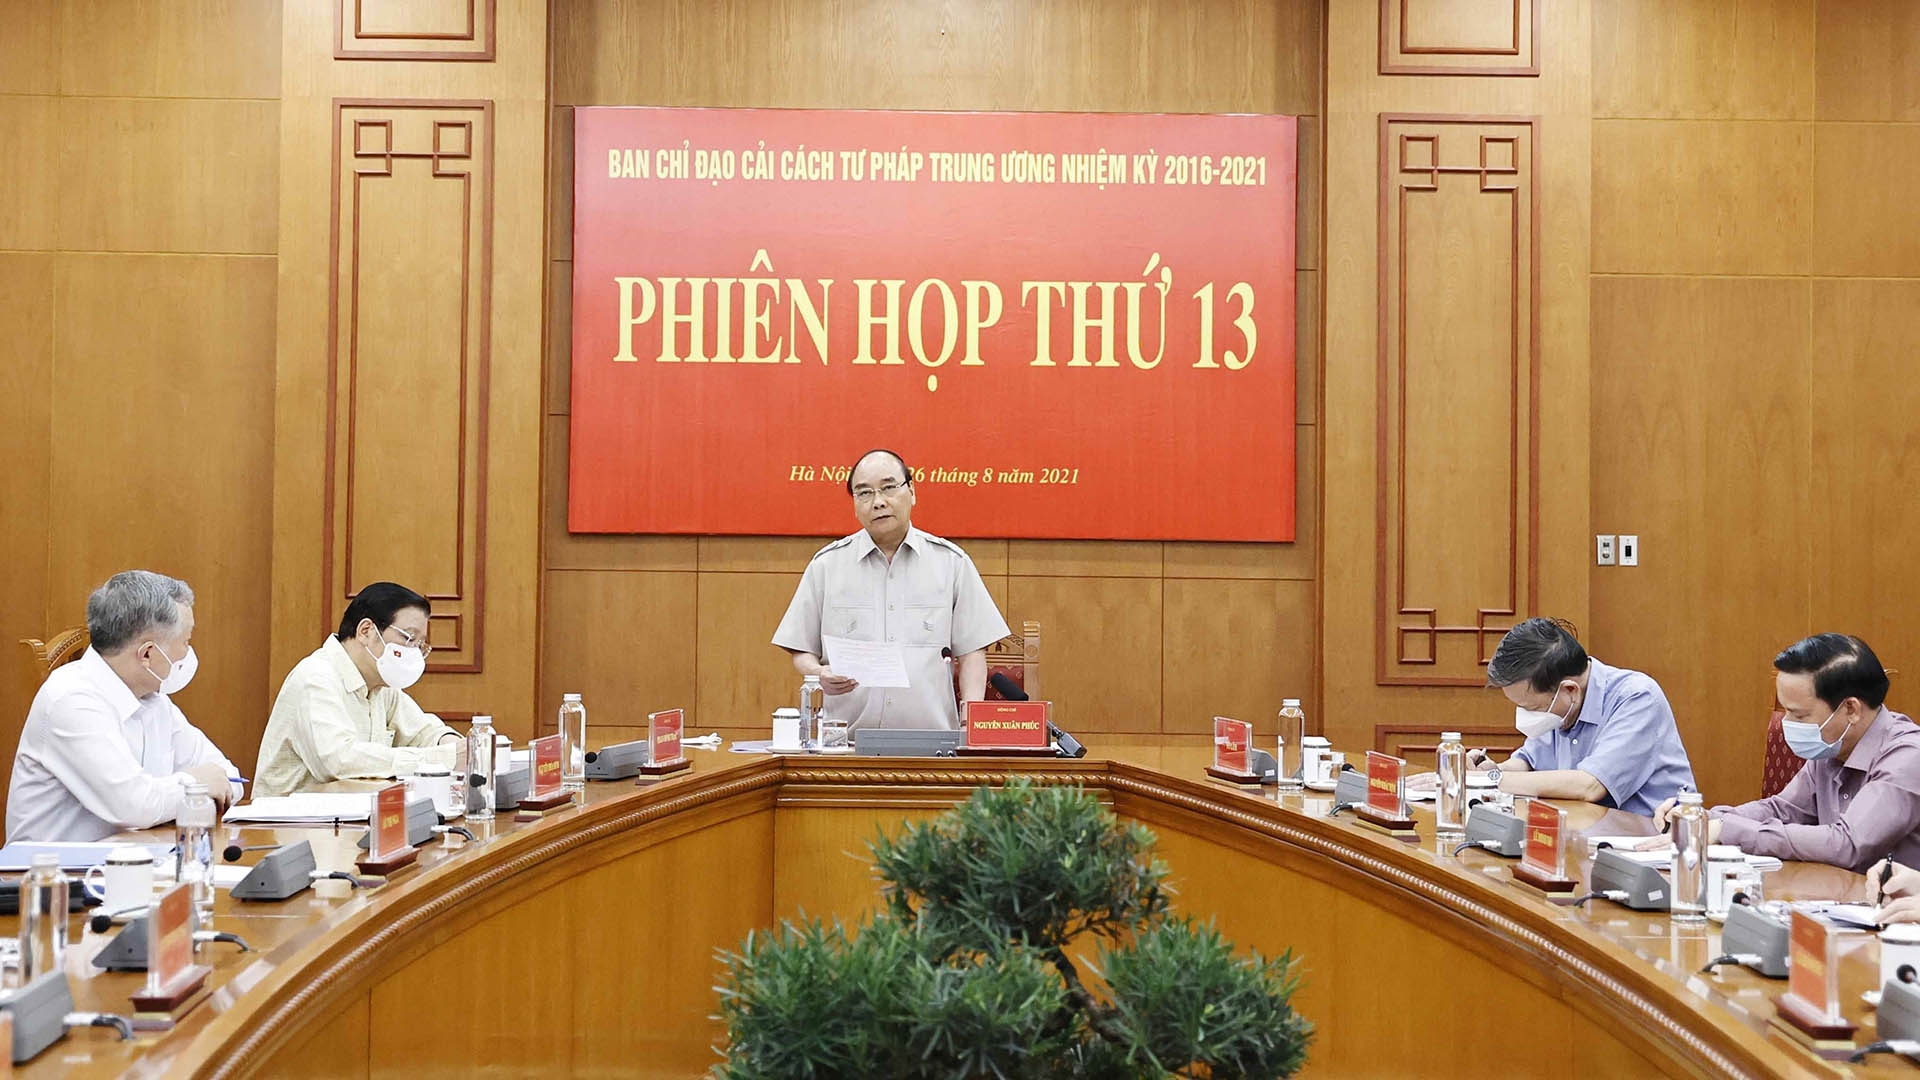 Chủ tịch nước Nguyễn Xuân Phúc, Trưởng Ban Chỉ đạo Cải cách Tư pháp Trung ương phát biểu. (Nguồn: TTXVN)